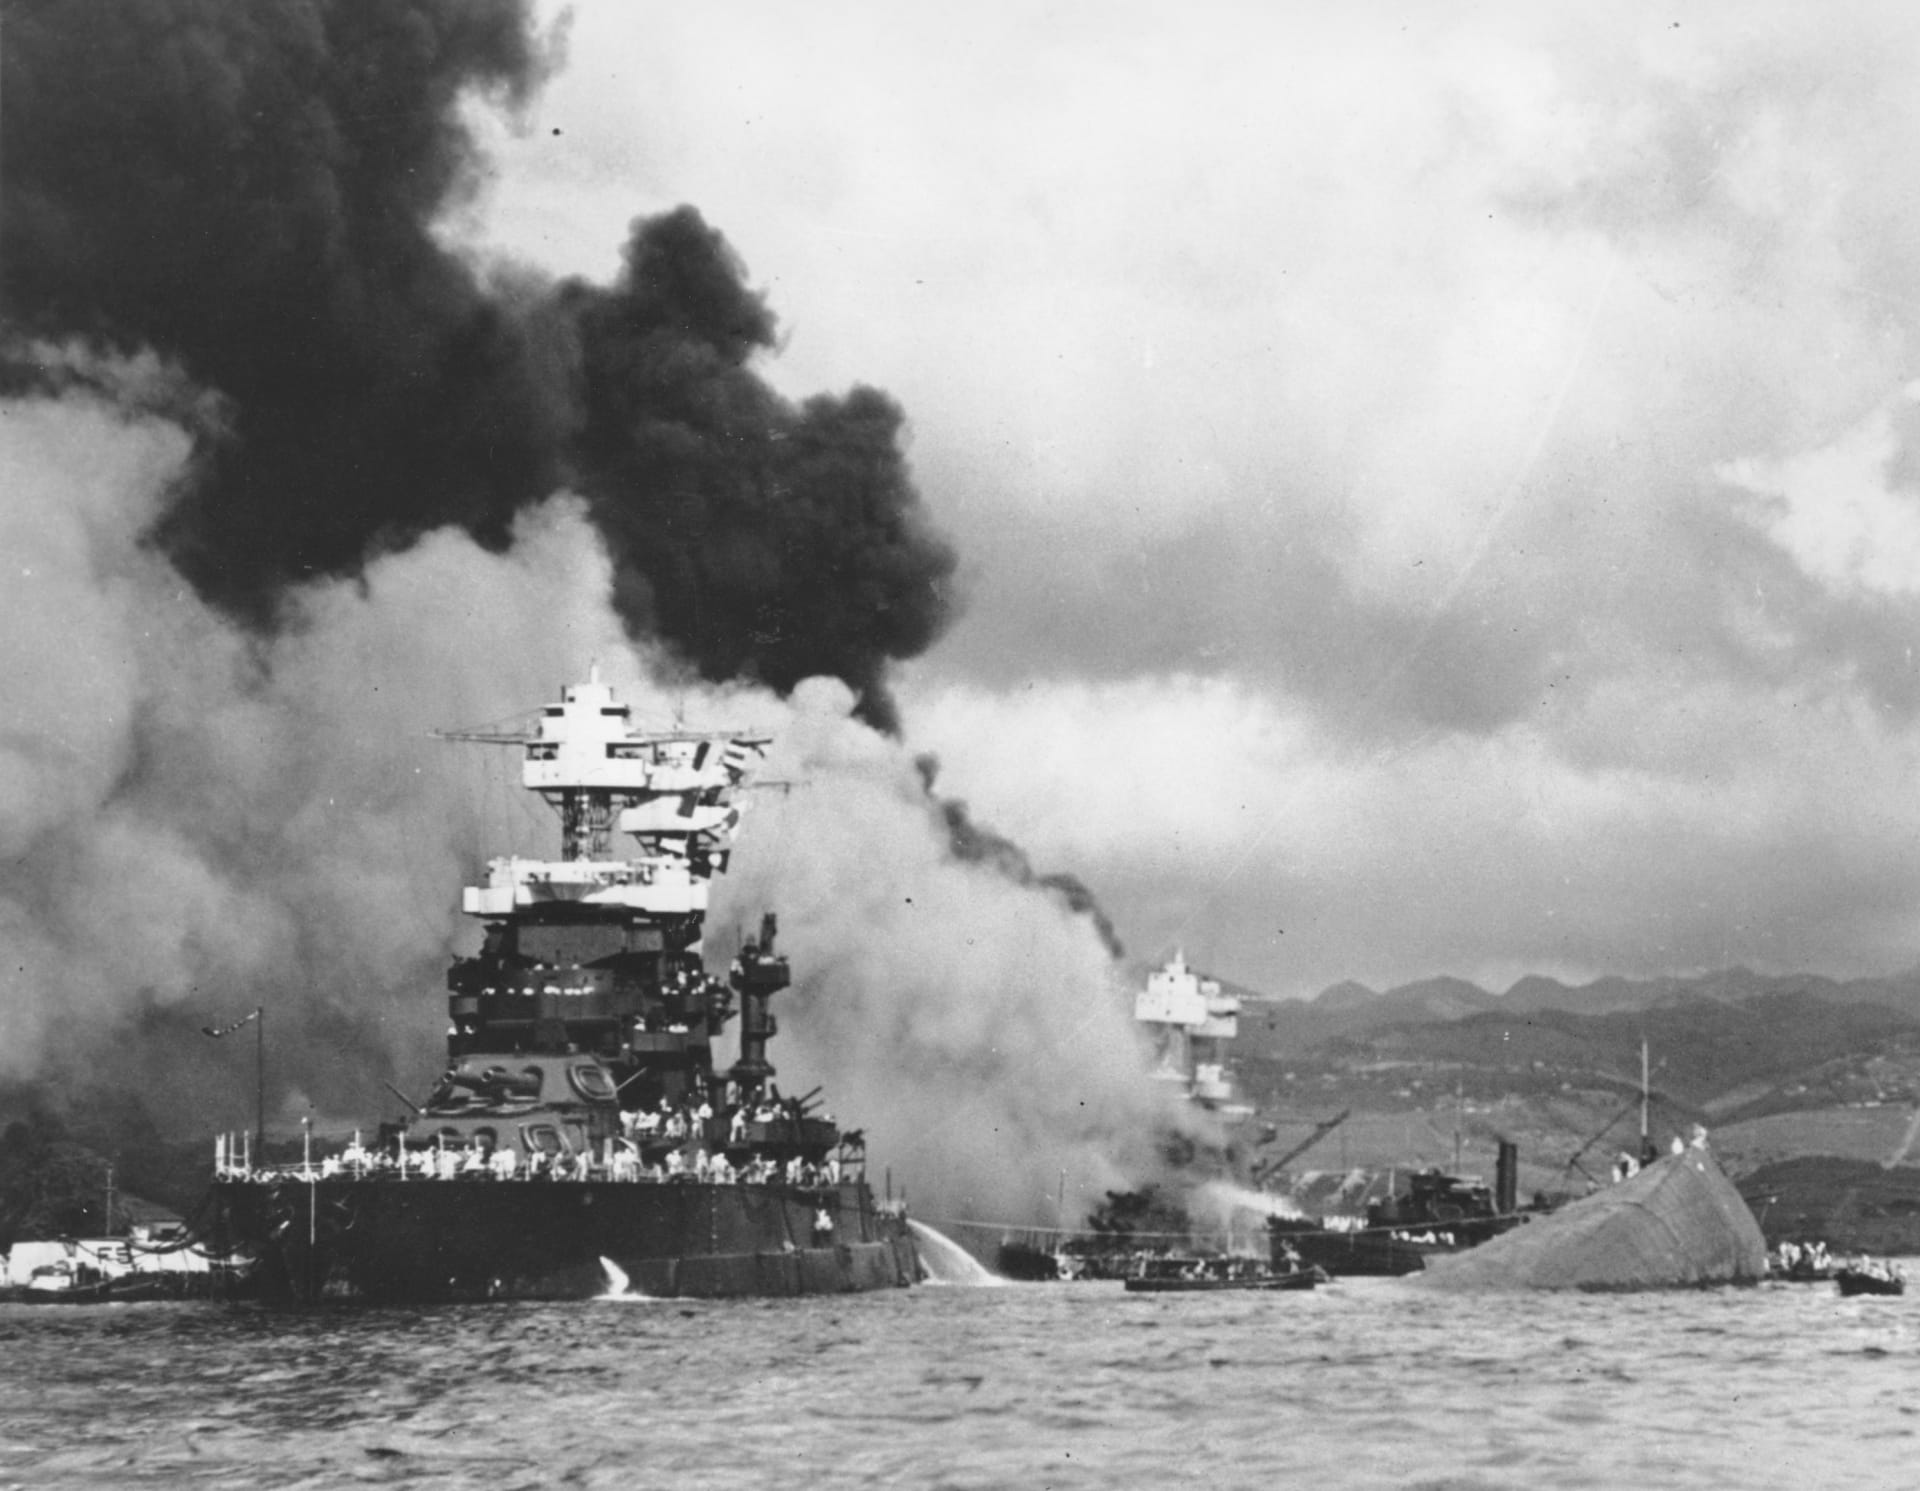 I přes rozsáhlé škody mohl přístav i nadále sloužit americkému námořnictvu, což se ukázalo být klíčovou výhodou.